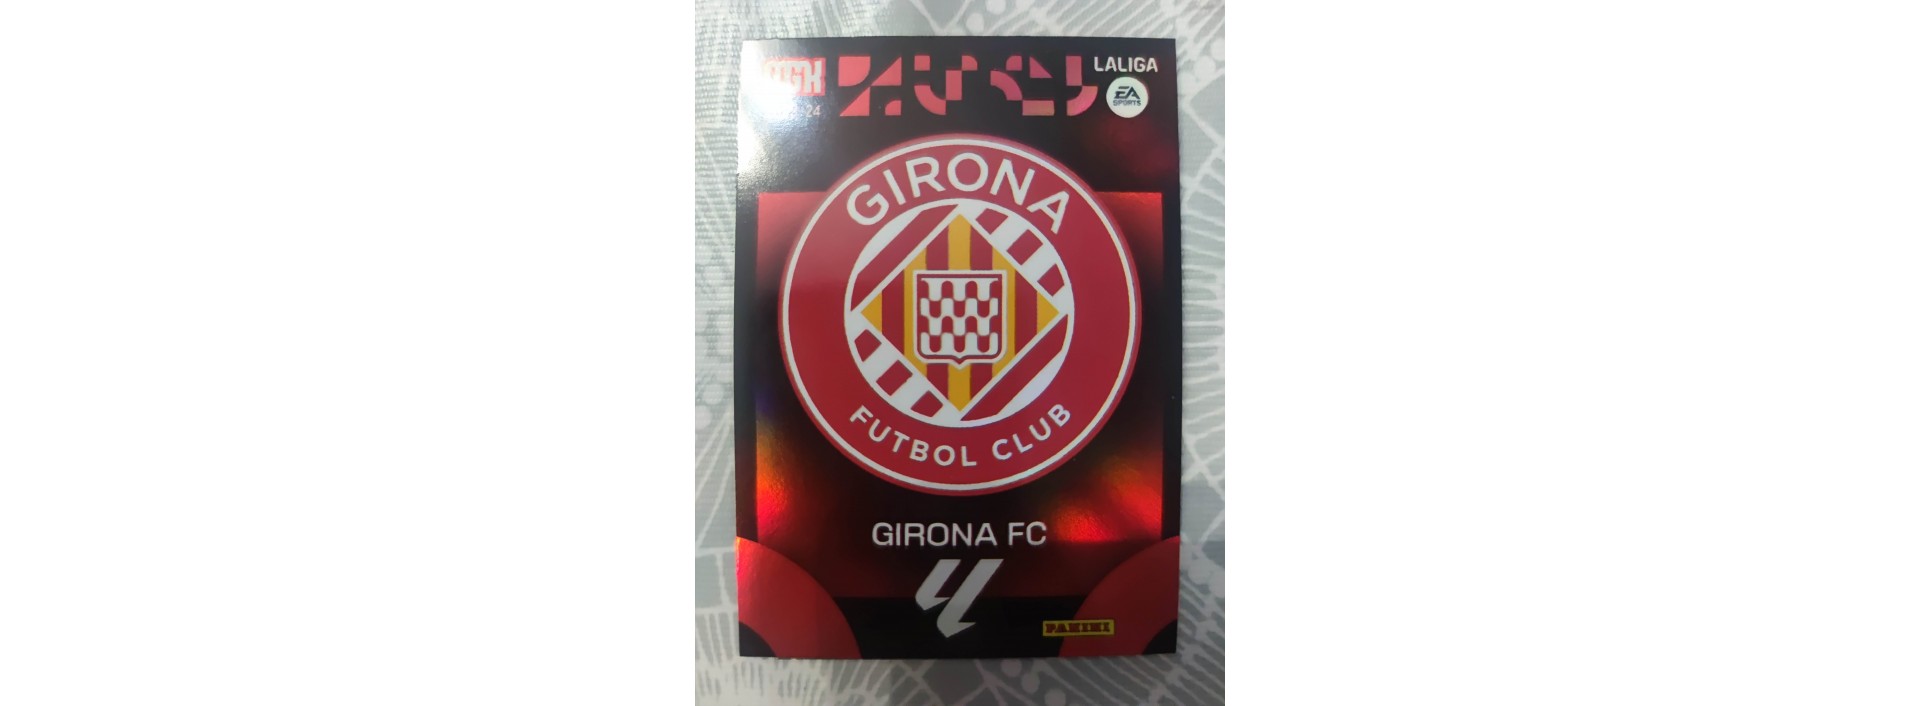 GIRONA FC